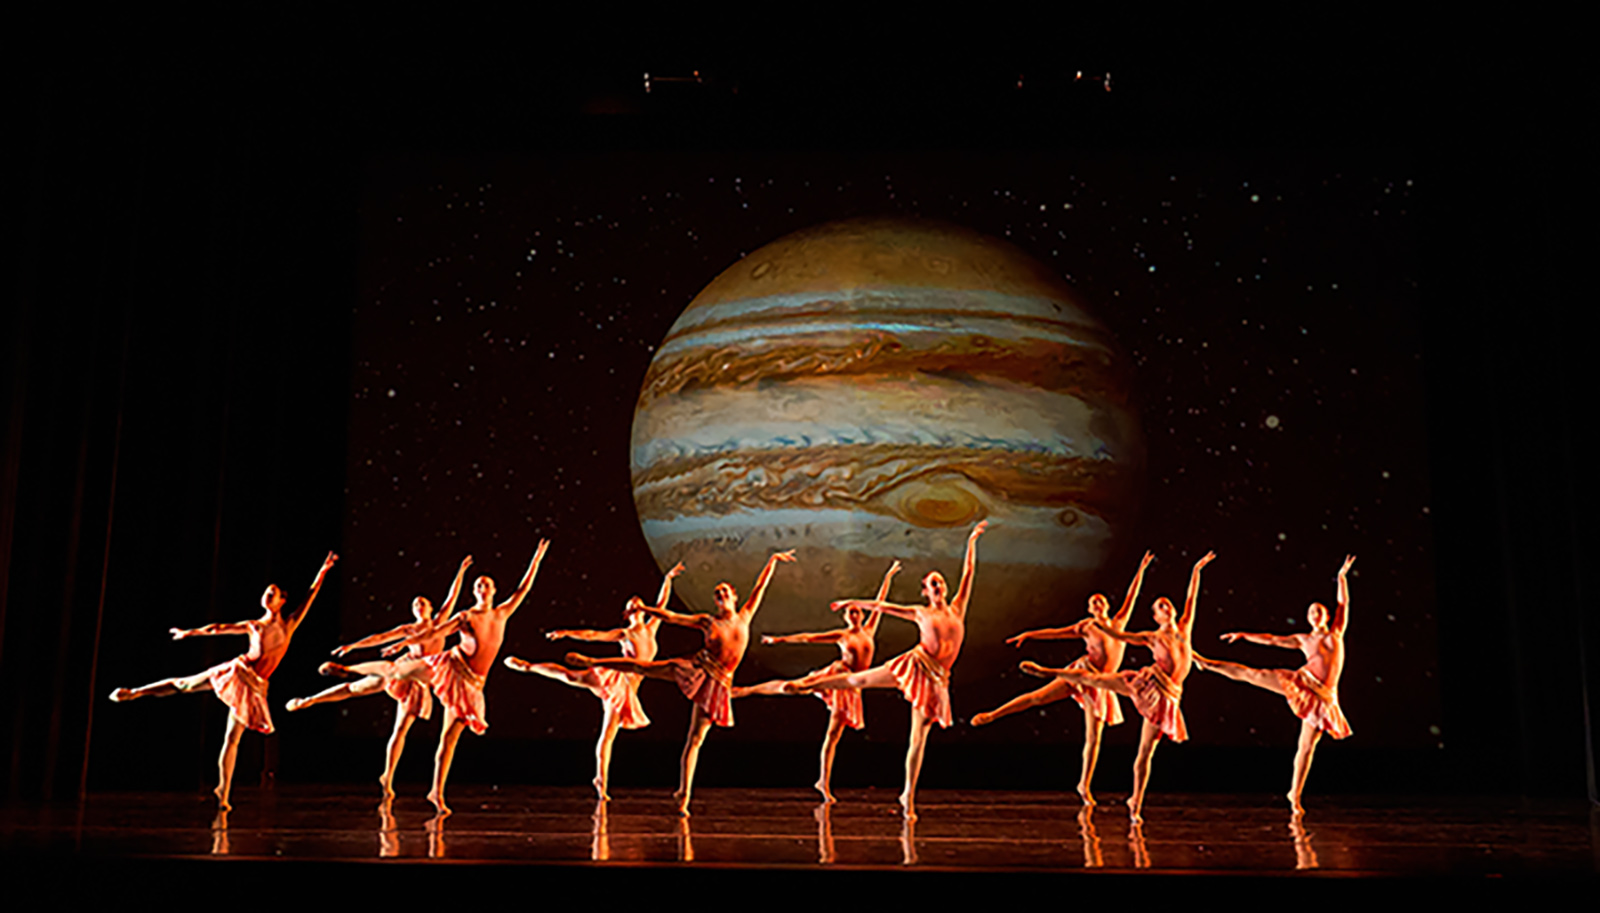 Karyn Connell ballet Jupiter in Images23 dance concert